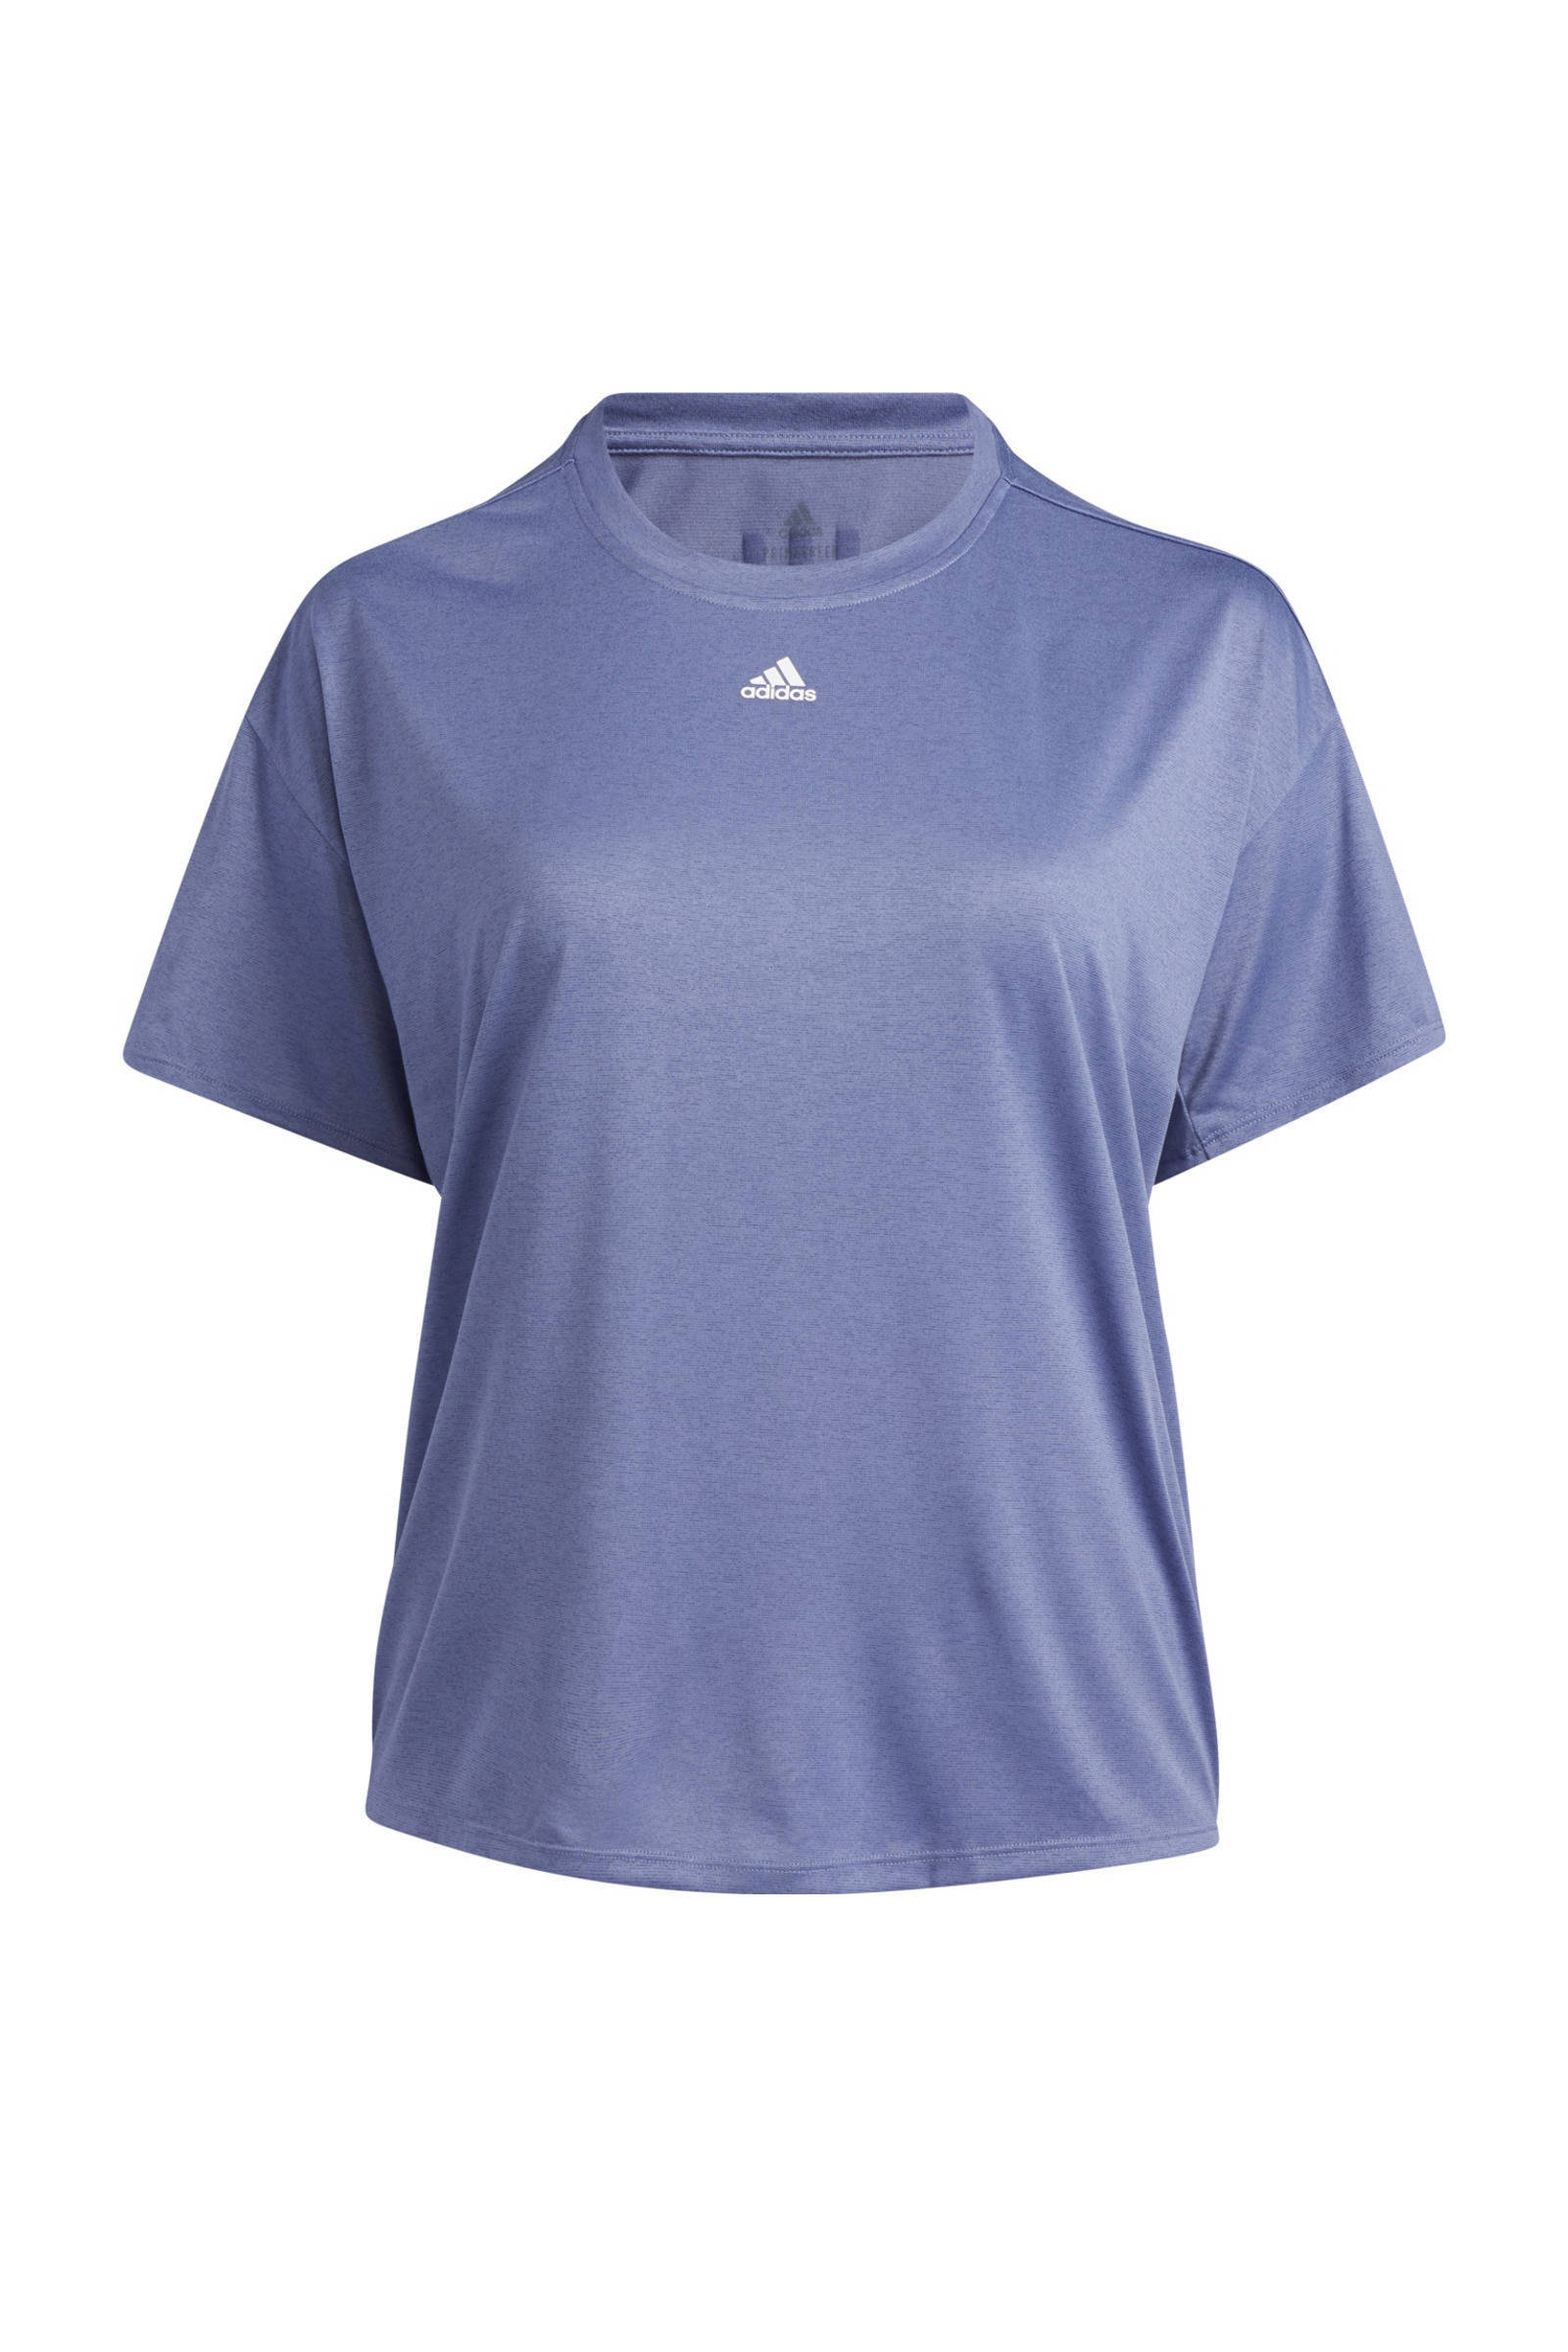 Adidas Performance Plus Size sport T shirt violet online kopen